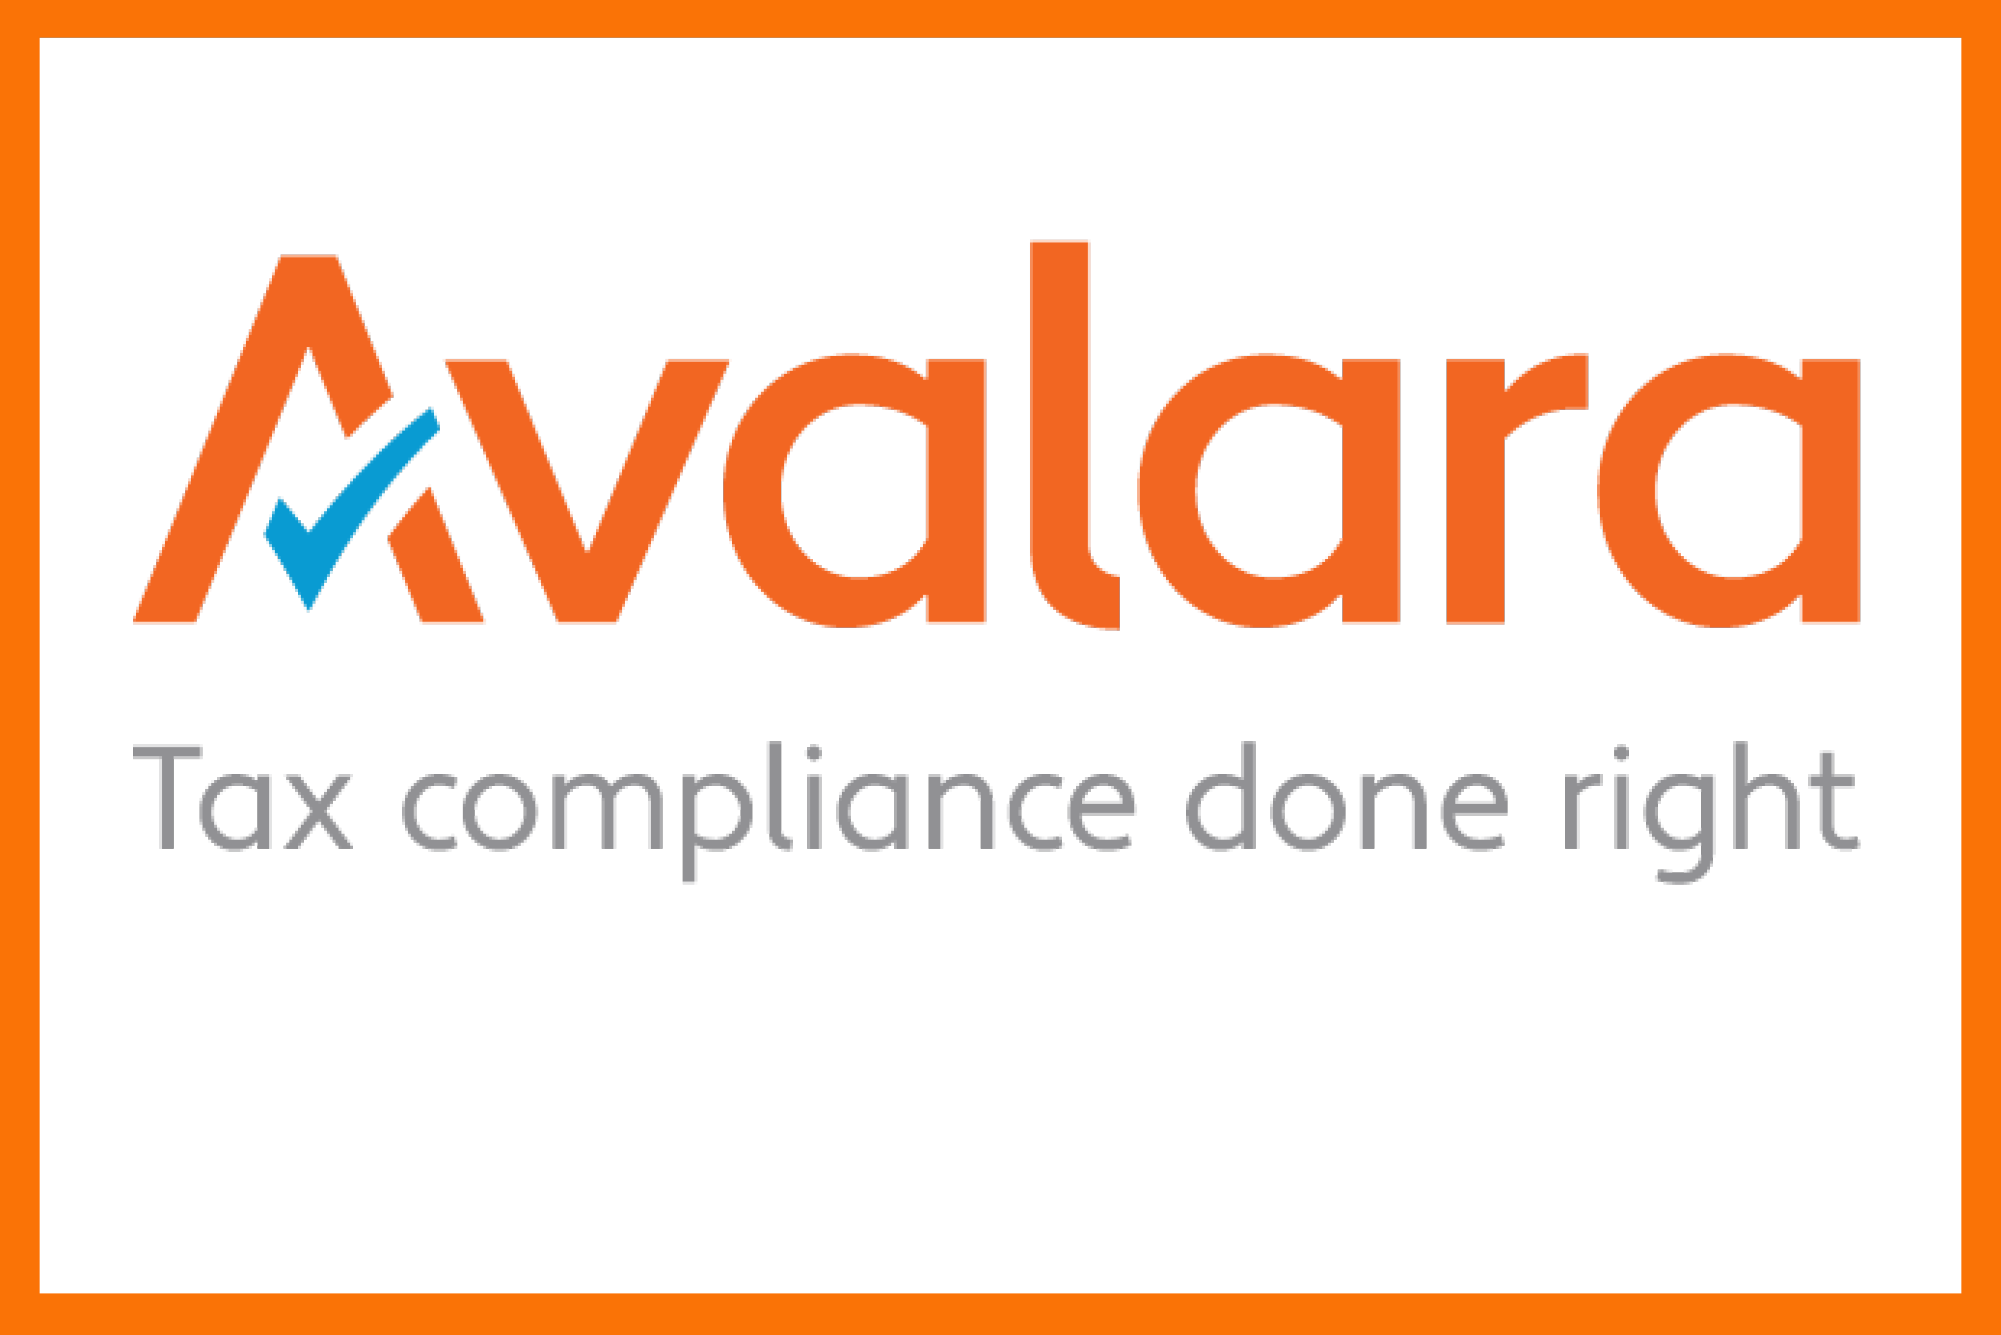 Avalara Official logo